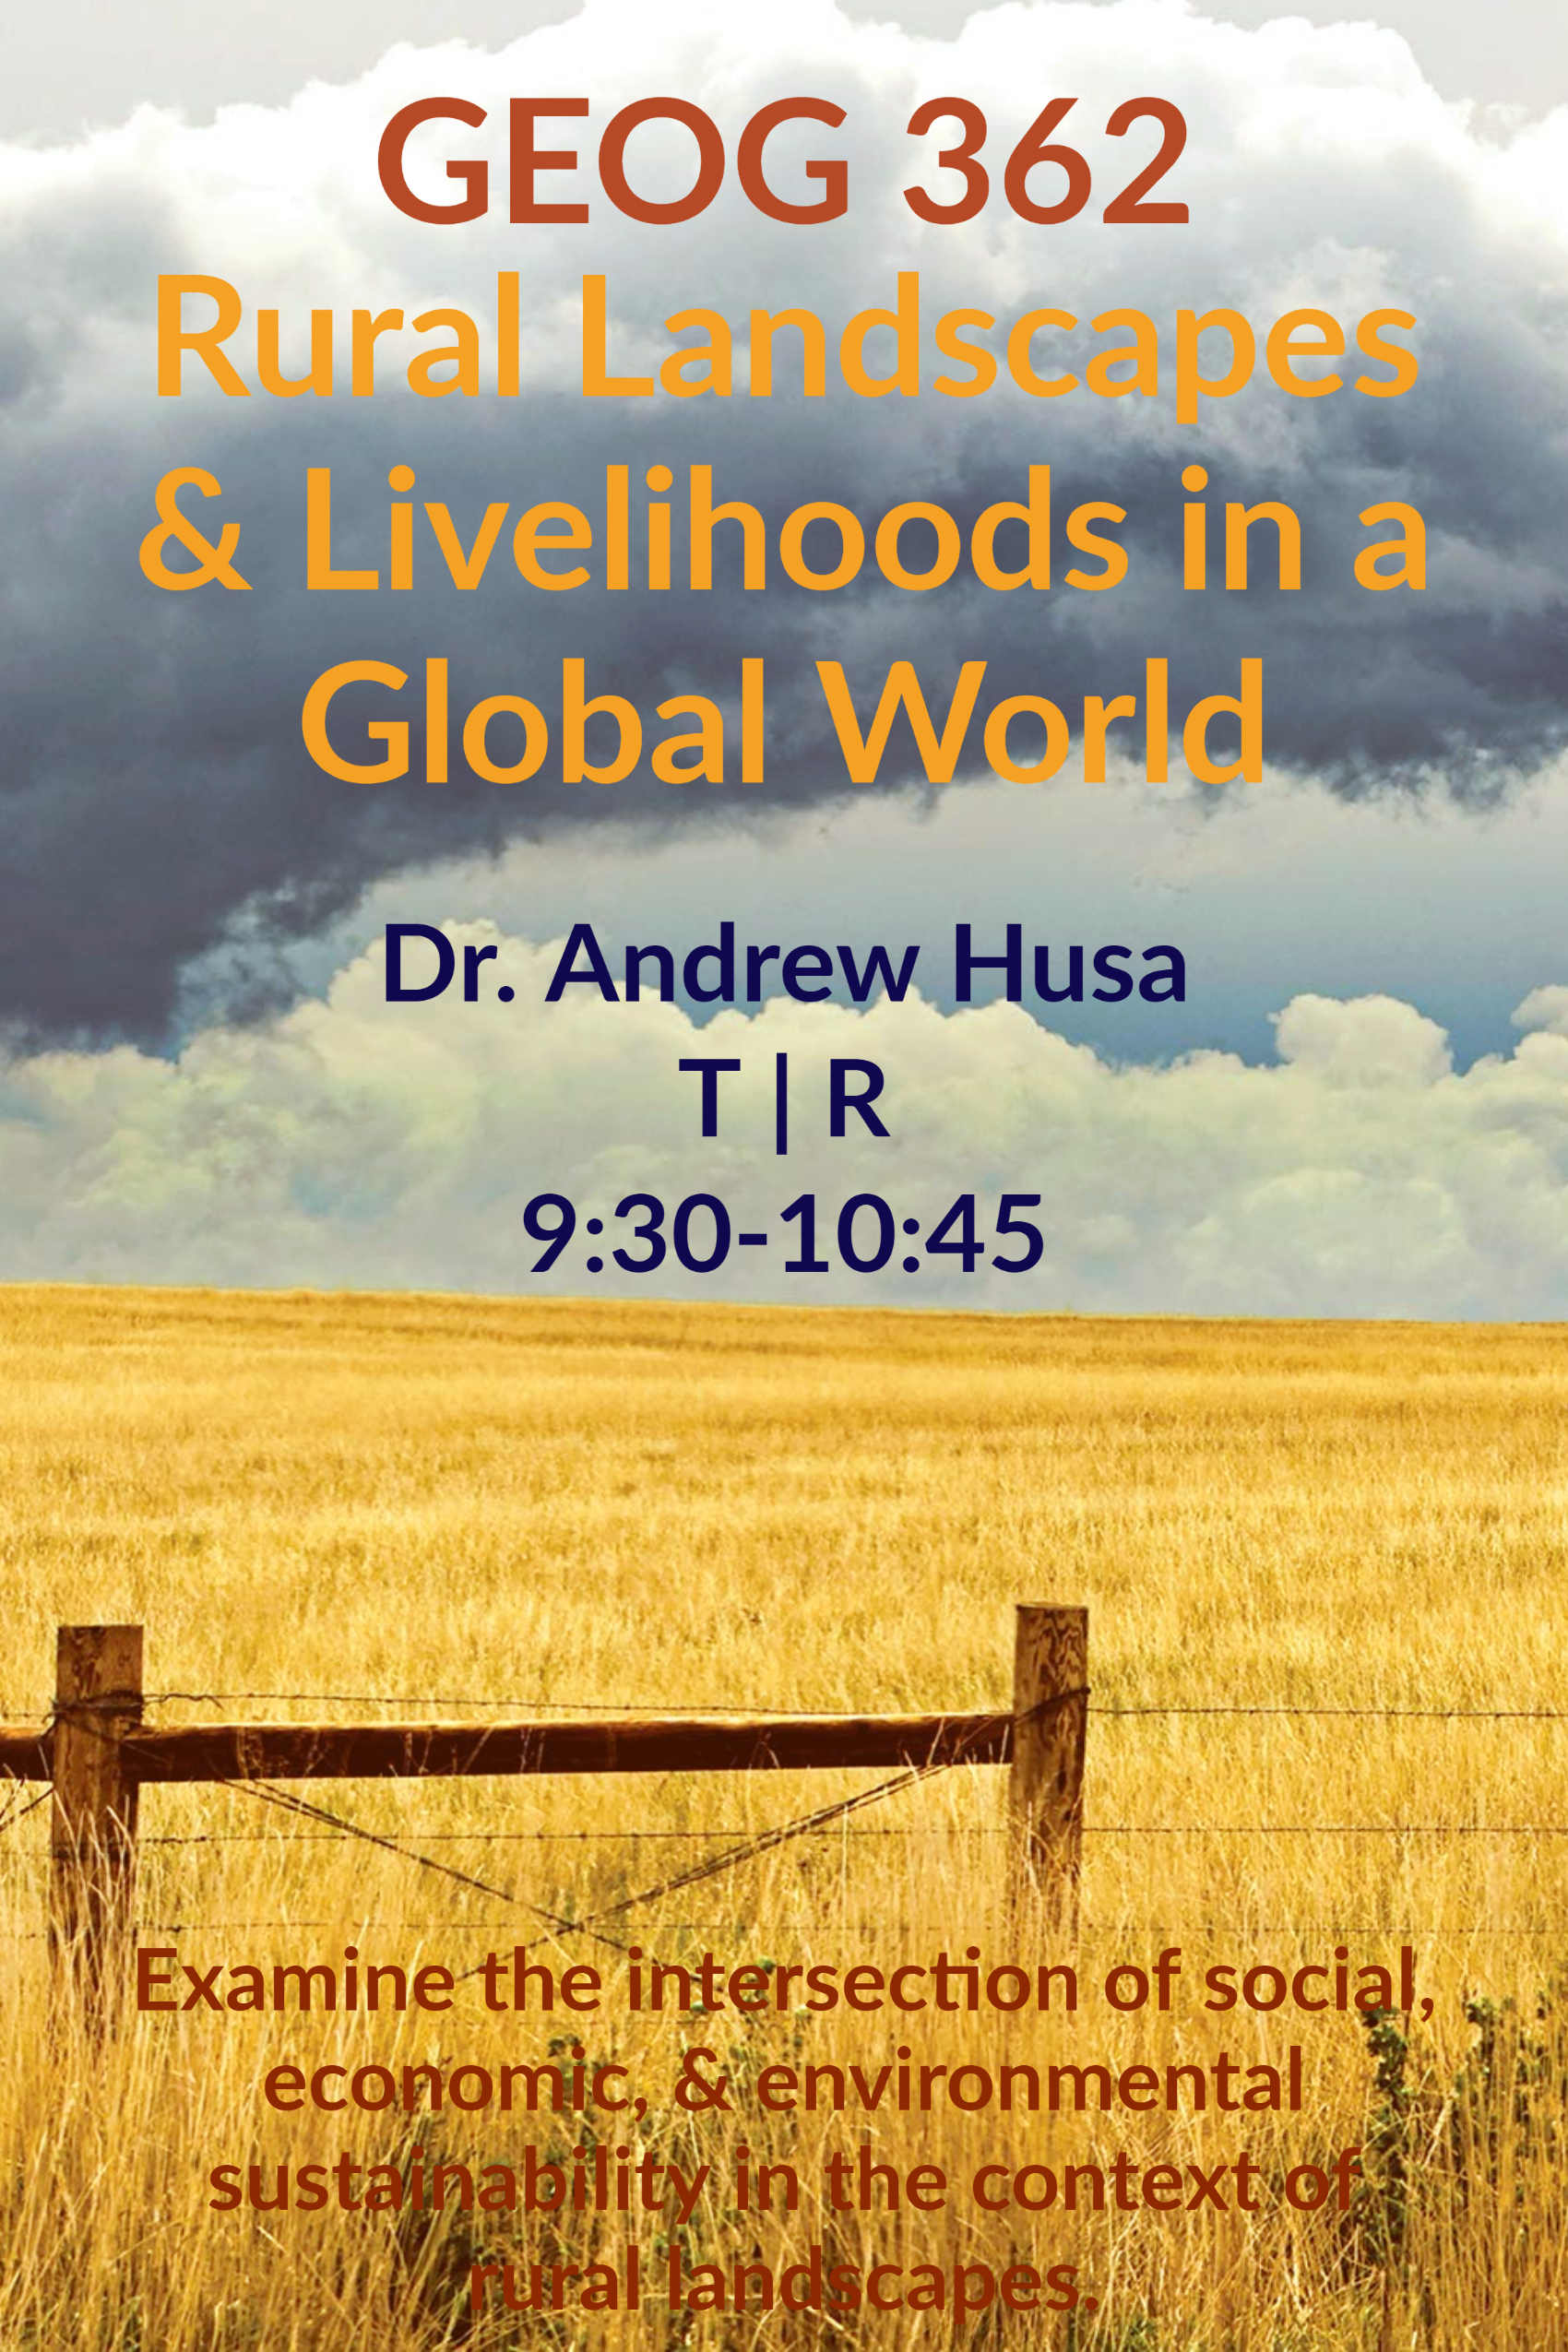 GEOG 362: Rural Landscapes & Livelihoods in a Global World